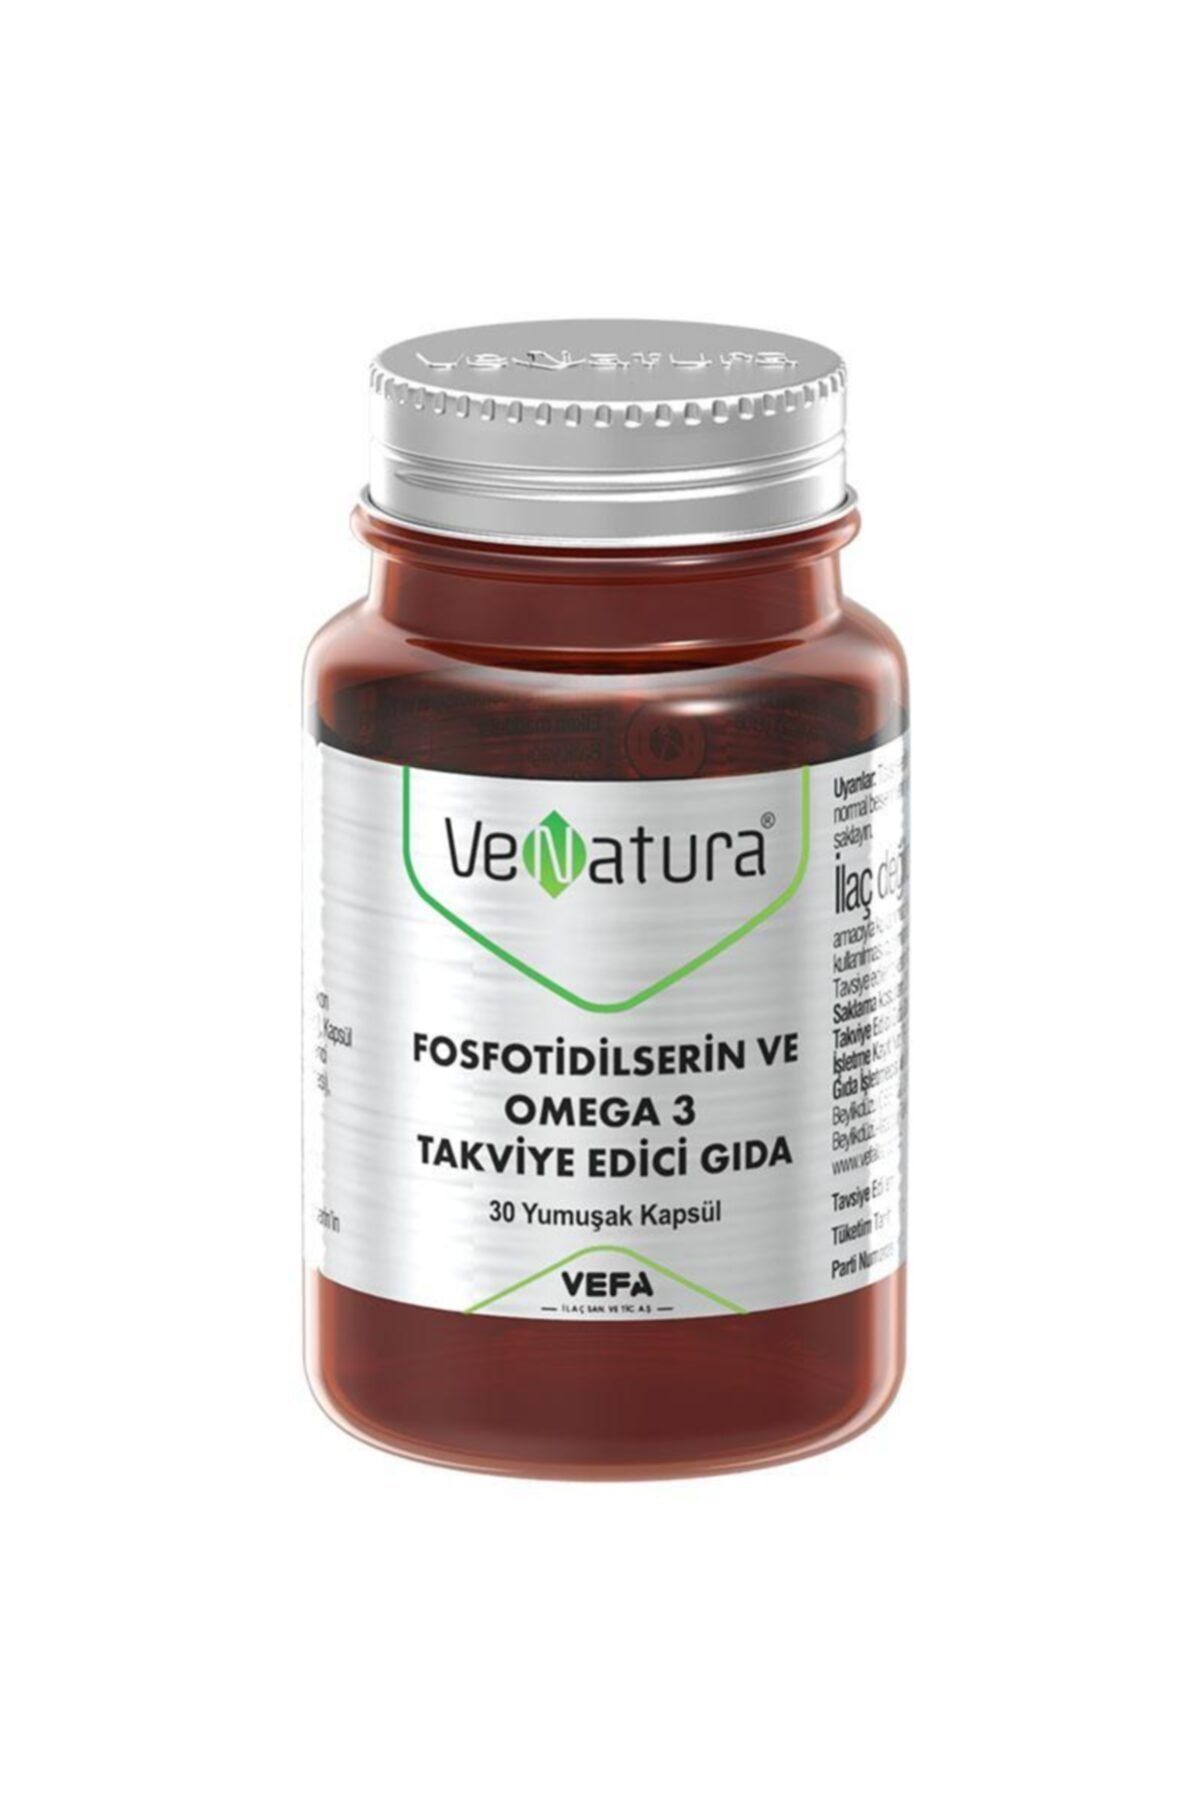 Venatura Fosfotidilserin Ve Omega 3 Takviye Edici Gıda 30 Yumuşak Kapsül